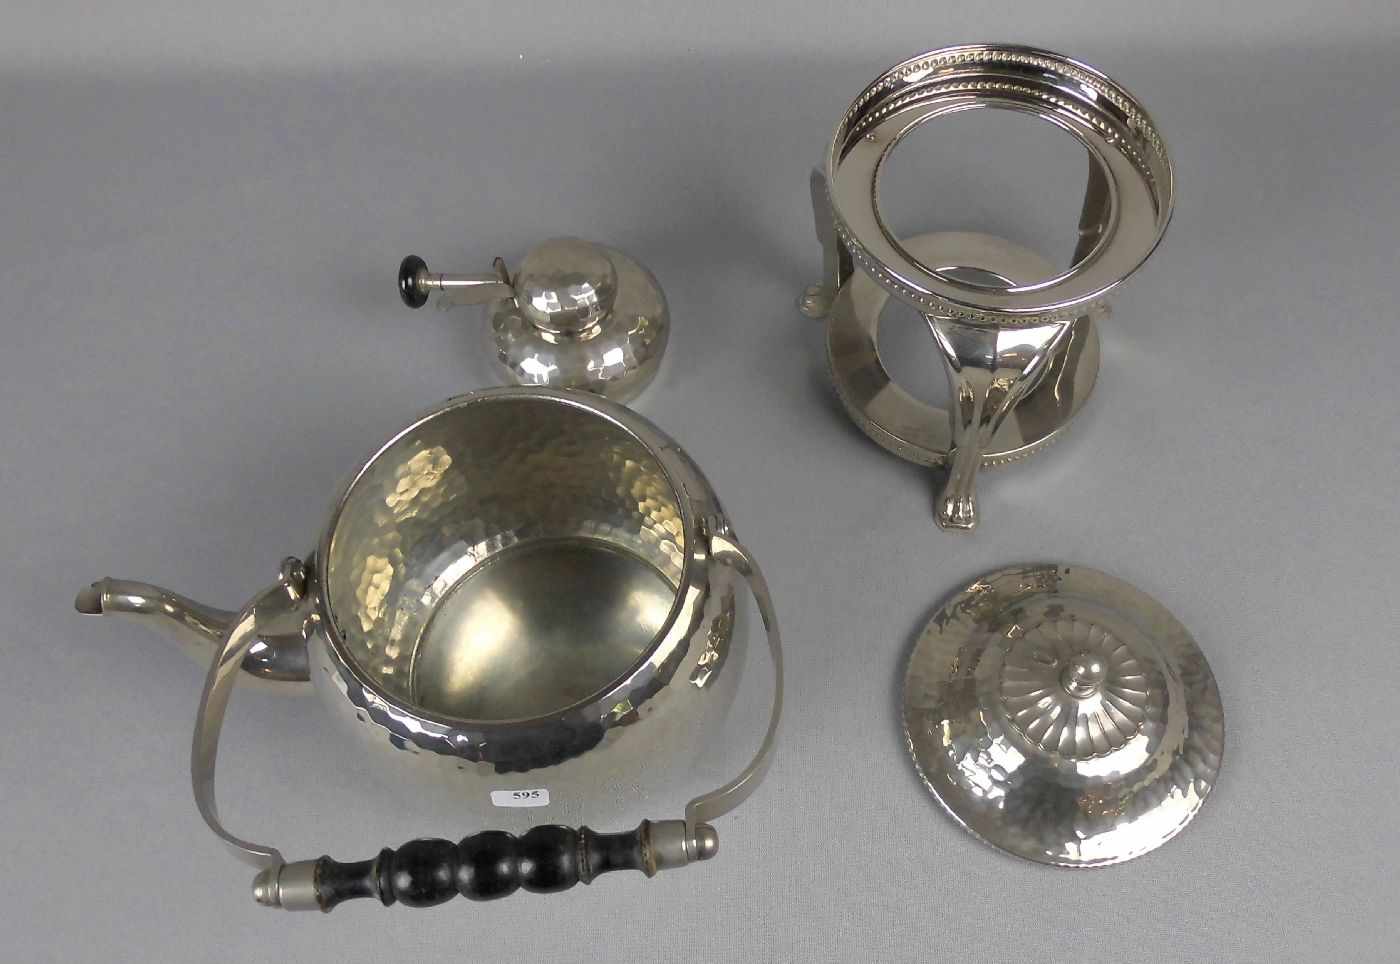 ART DÉCO - WASSERKESSEL / TEEKANNE MIT BRENNER / kettle, versilbertes Metall, unter dem Stand - Image 2 of 3